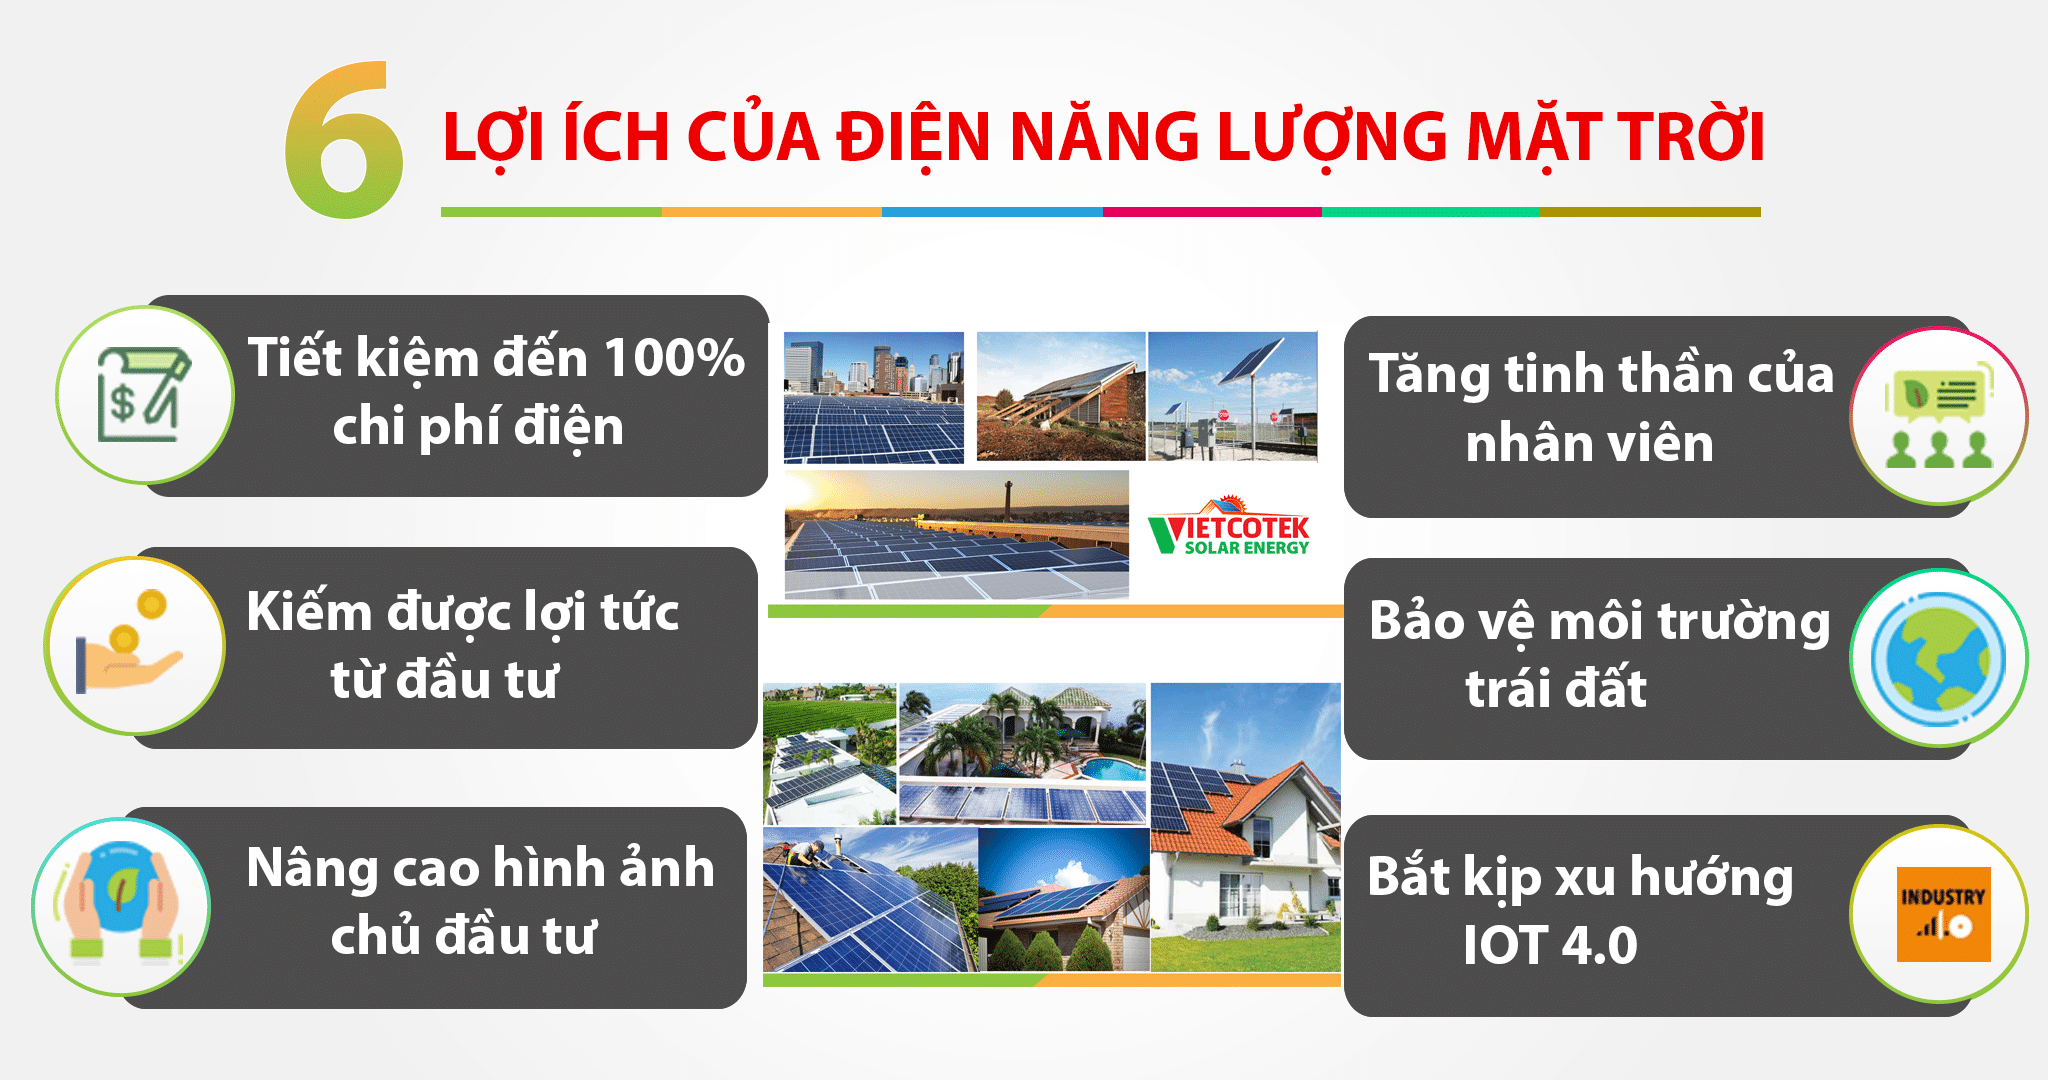 Ở Việt Nam, có rất nhiều lợi thế tận dụng nguồn điện mặt trời, vì nằm trong dải phân bổ ánh nắng mặt trời nhiều nhất trong năm trên bản đồ bức xạ mặt trời thế giới.